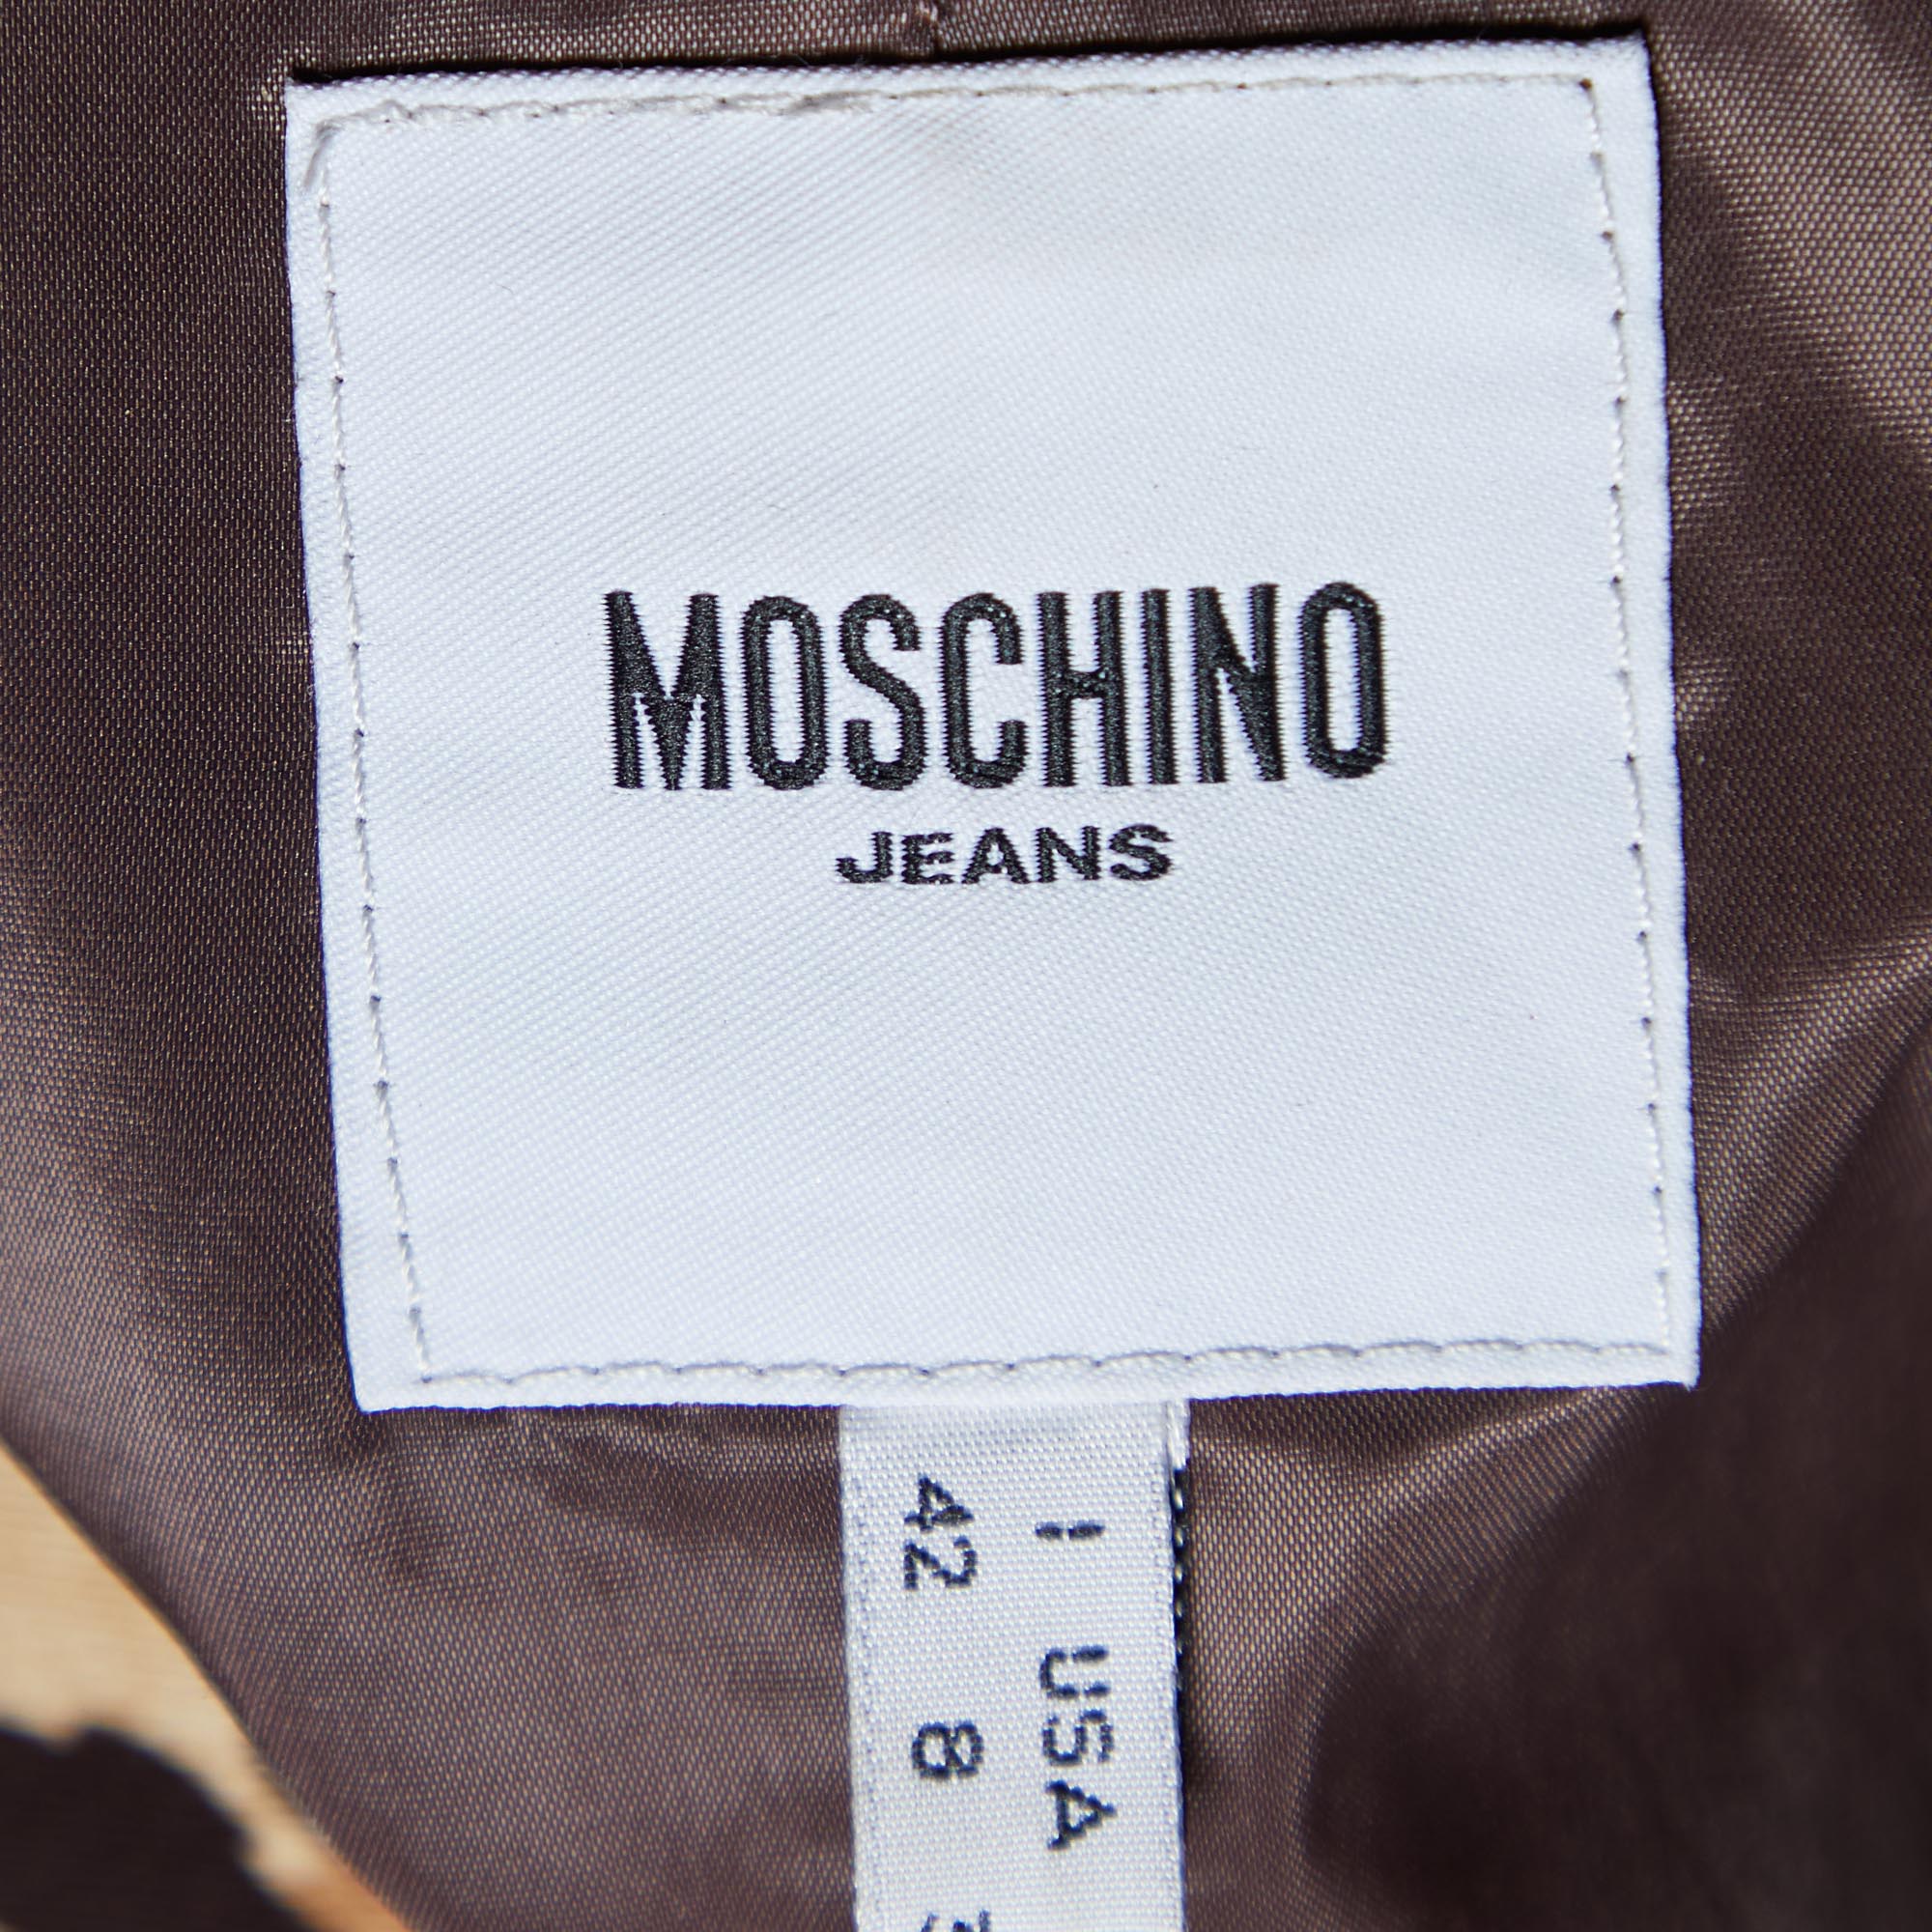 Moschino Jeans Brown/Beige Animal Printed Cotton Blazer M